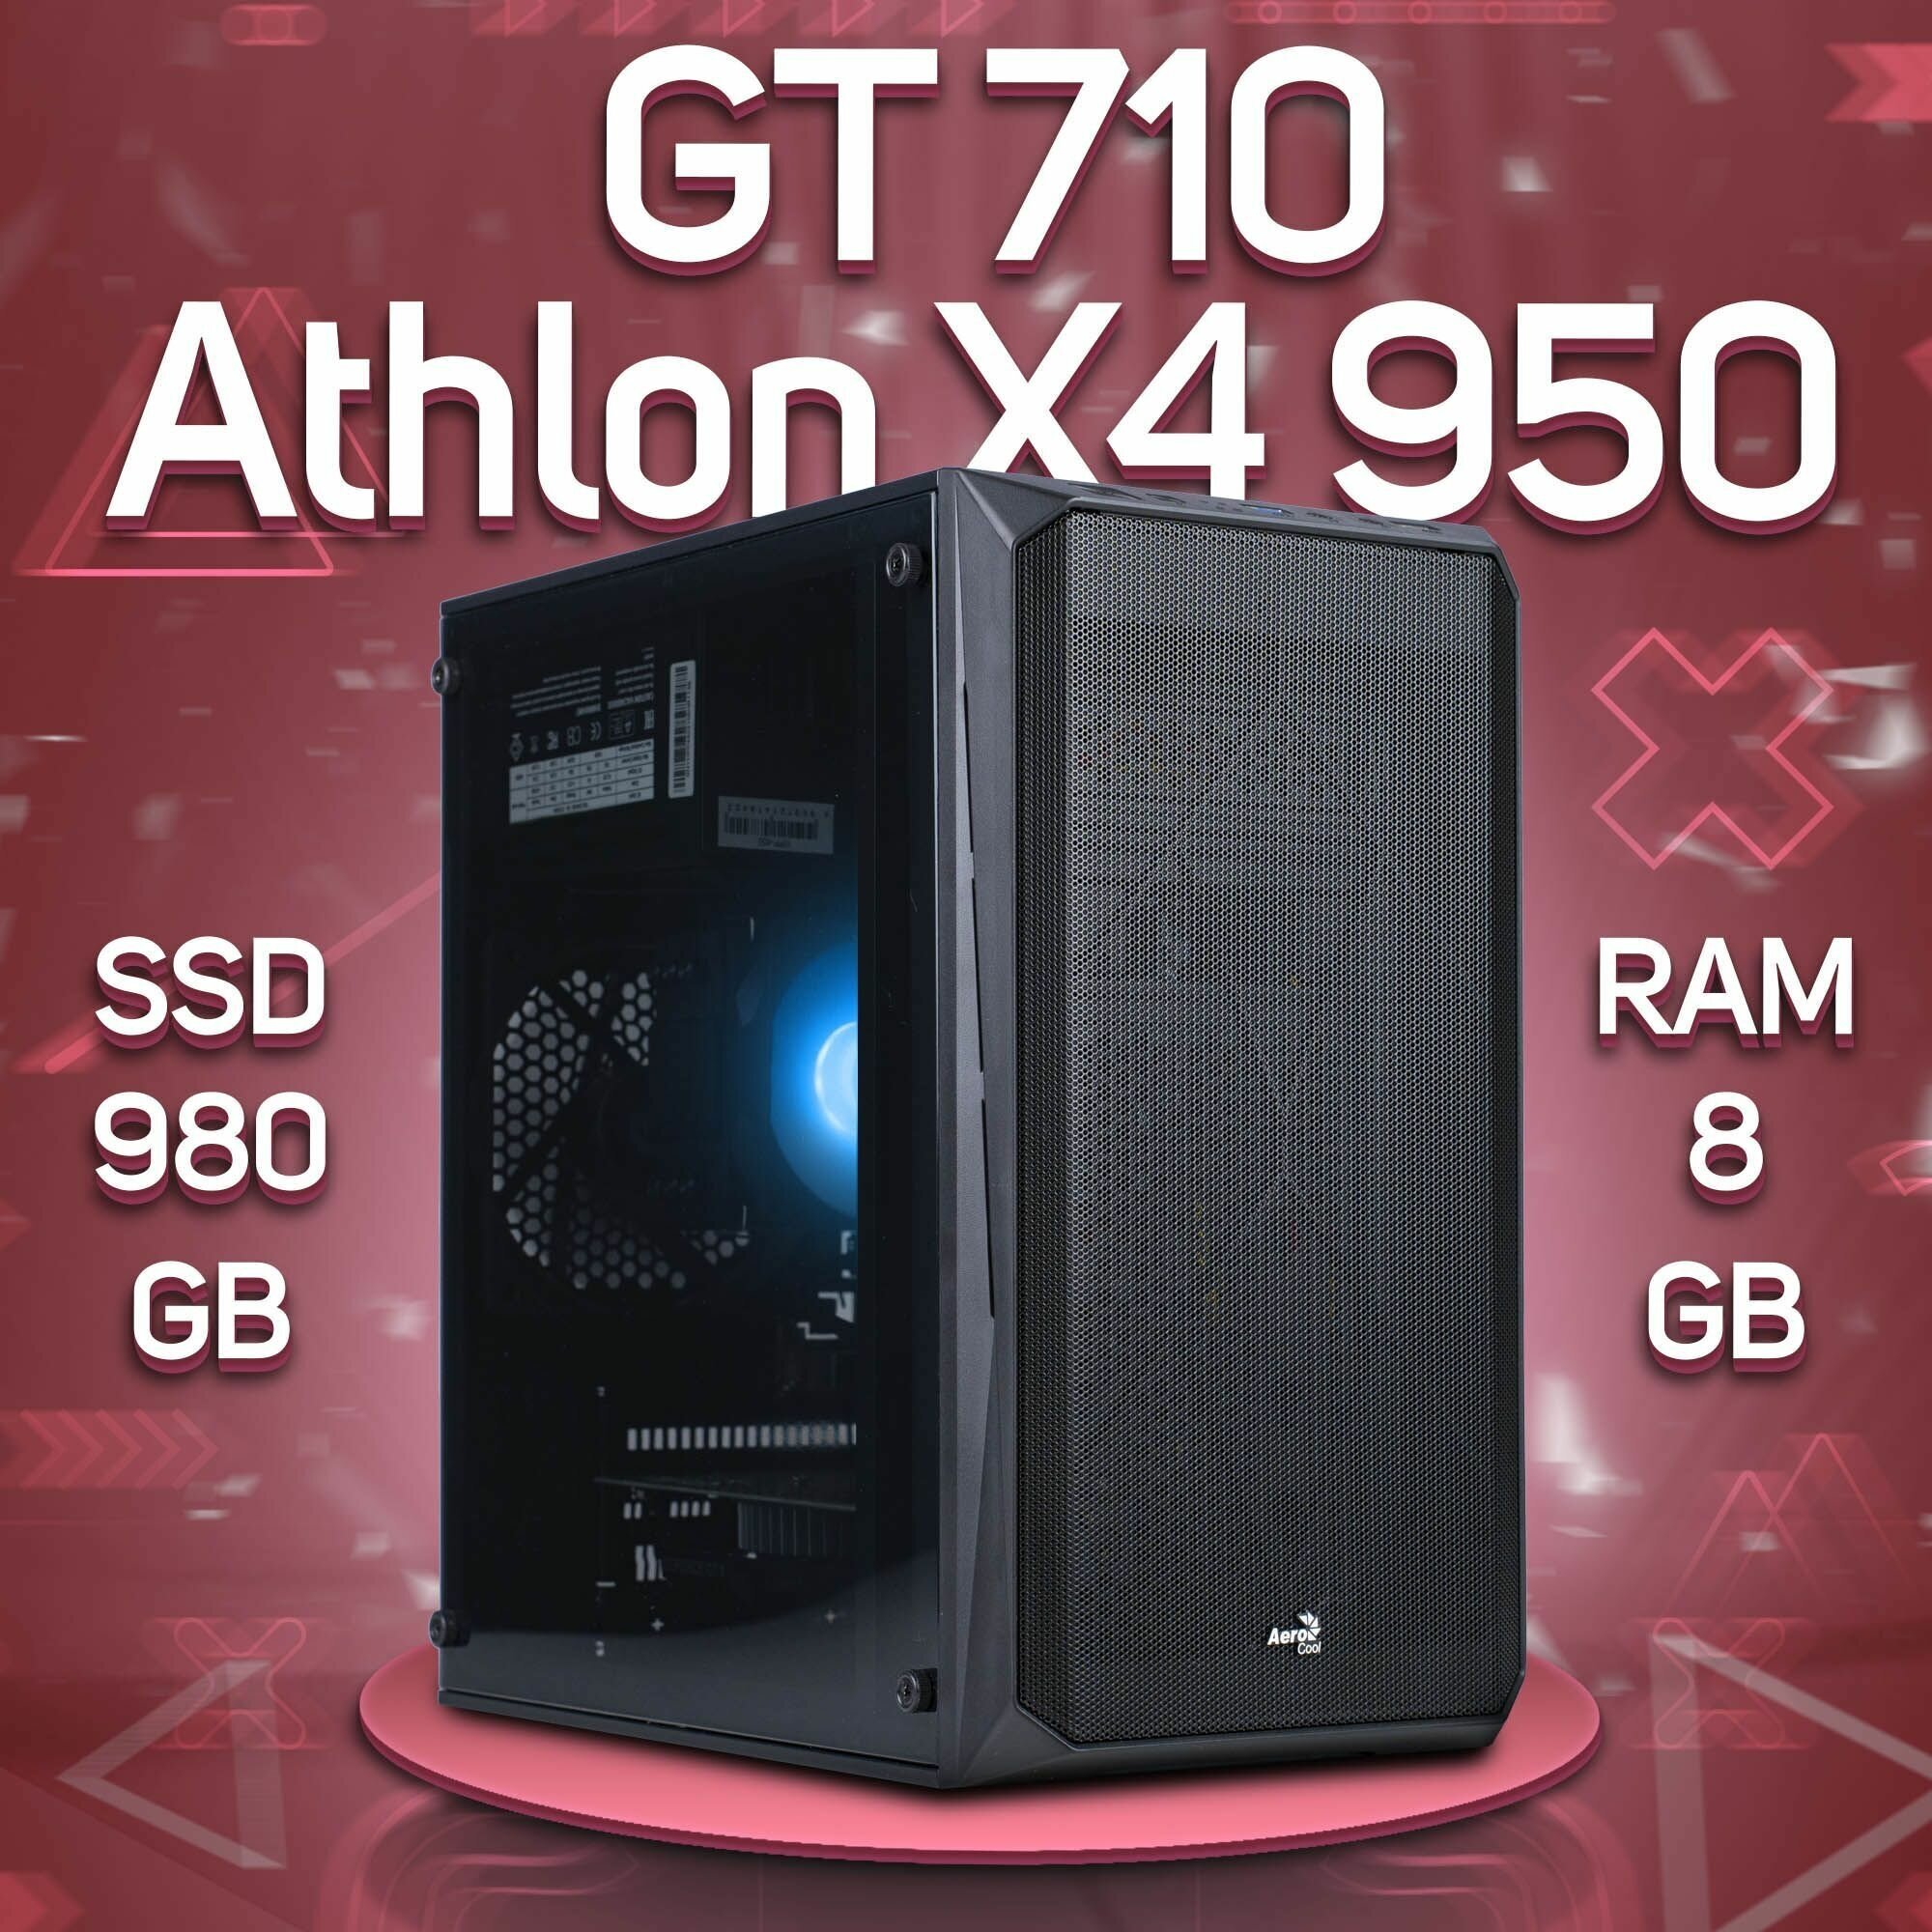 Компьютер AMD Athlon X4 950, NVIDIA GeForce GT 710 (1 Гб), DDR4 8gb, SSD 980gb